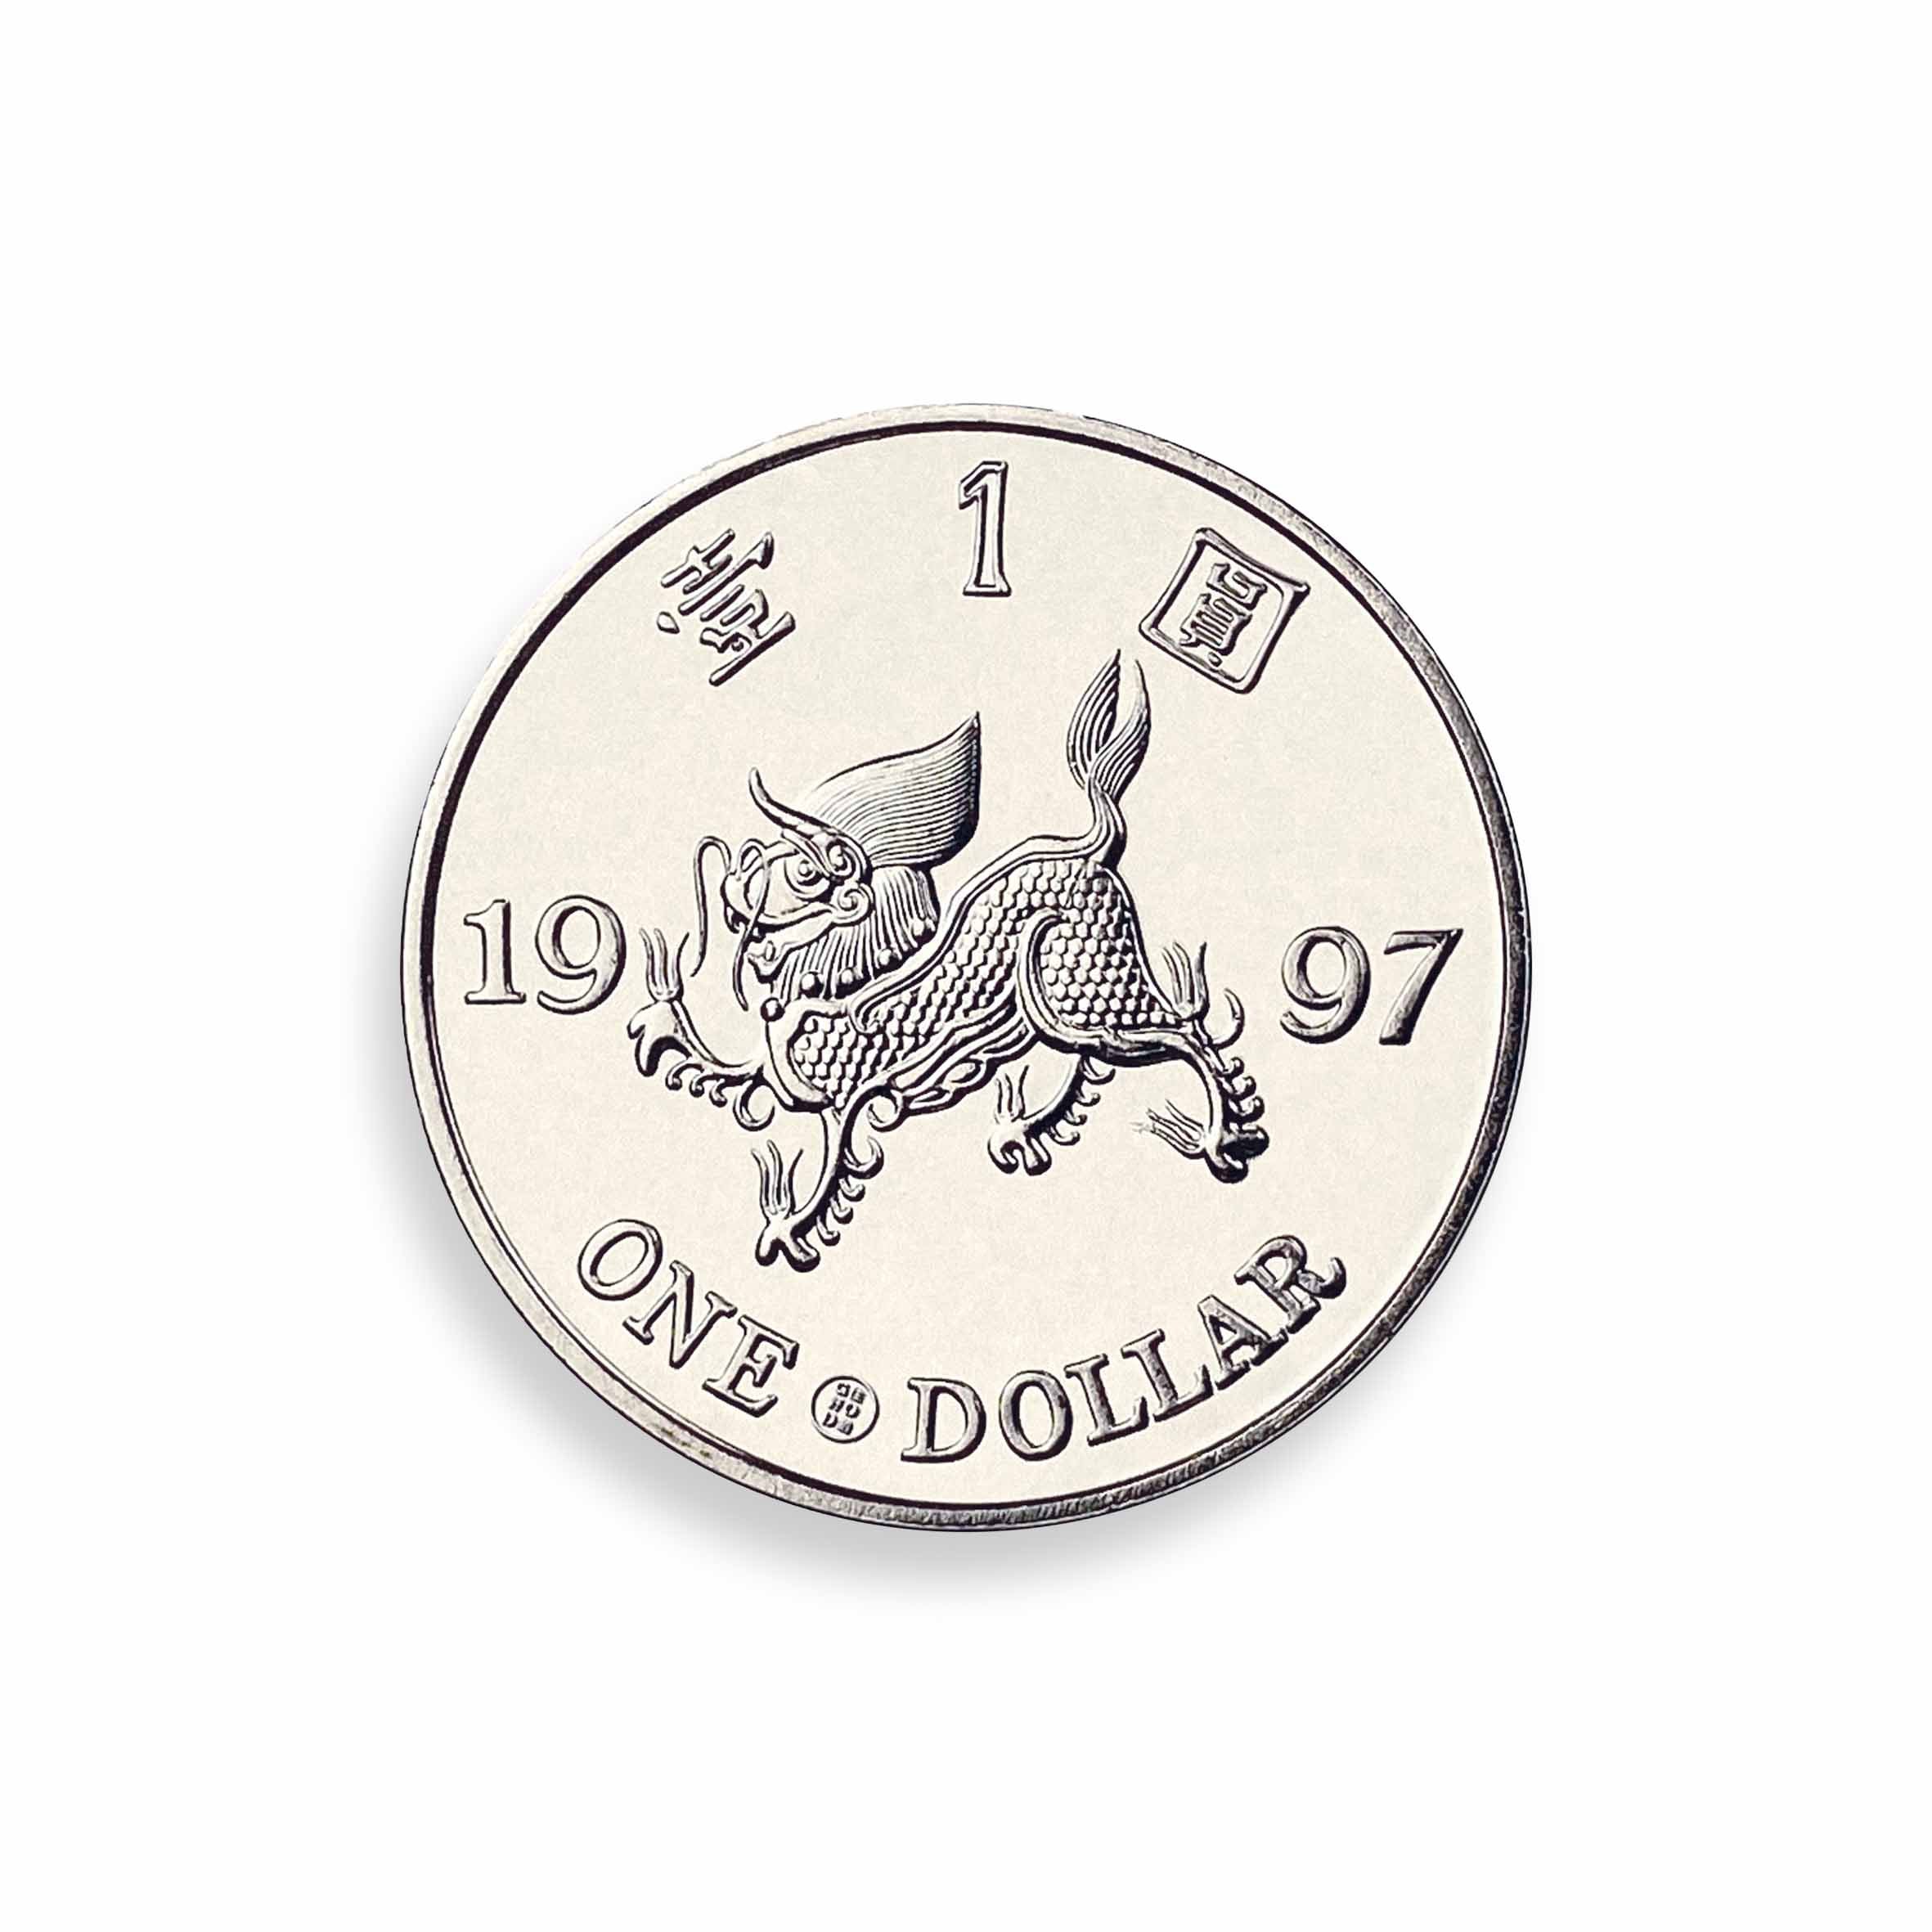 Hong Kong Coins Coasters Set